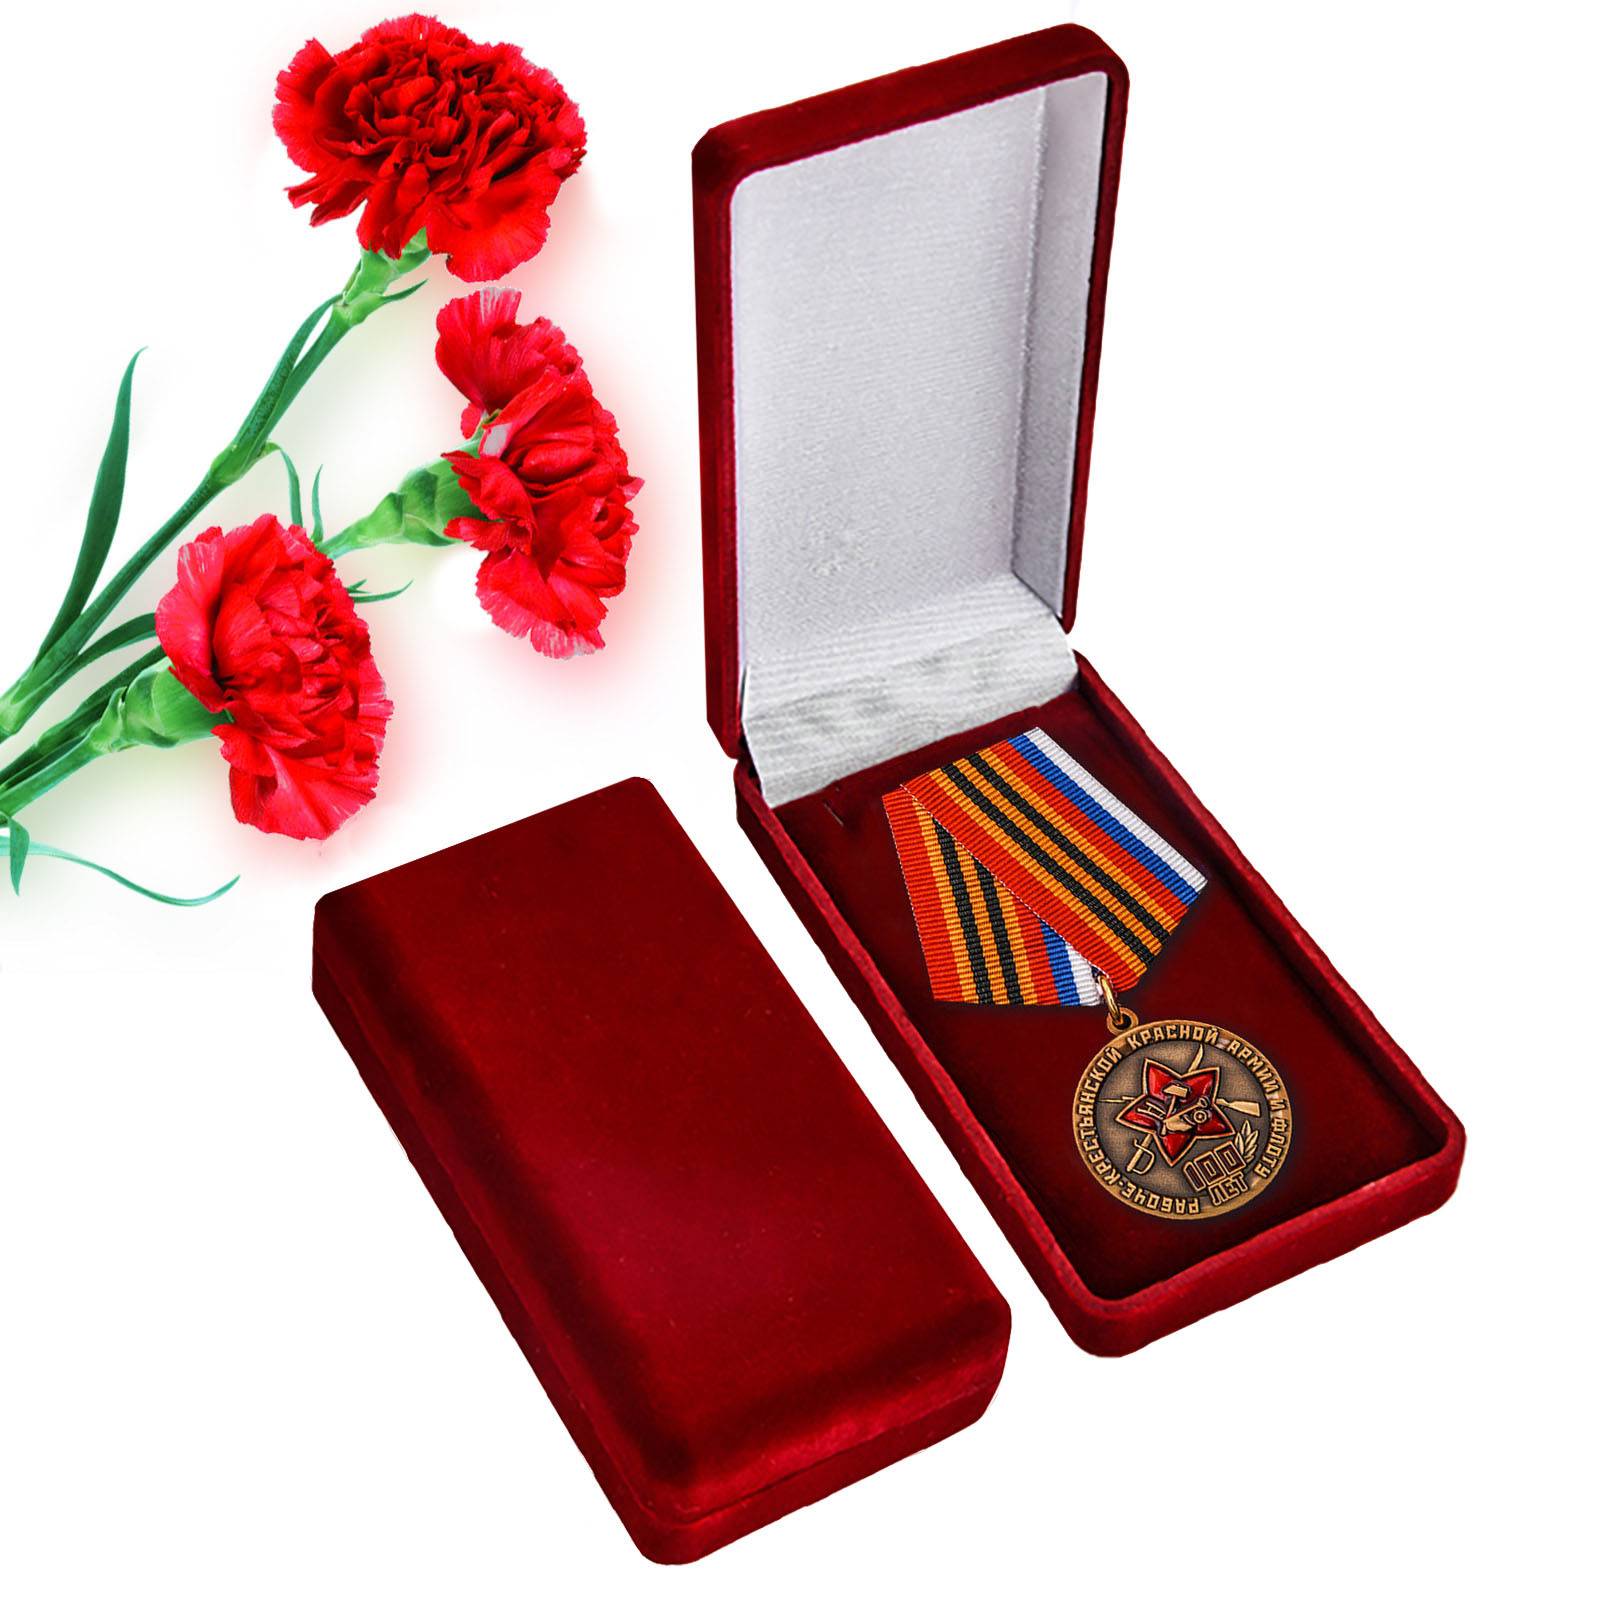 Медаль "100 лет Армии и флоту" в футляре